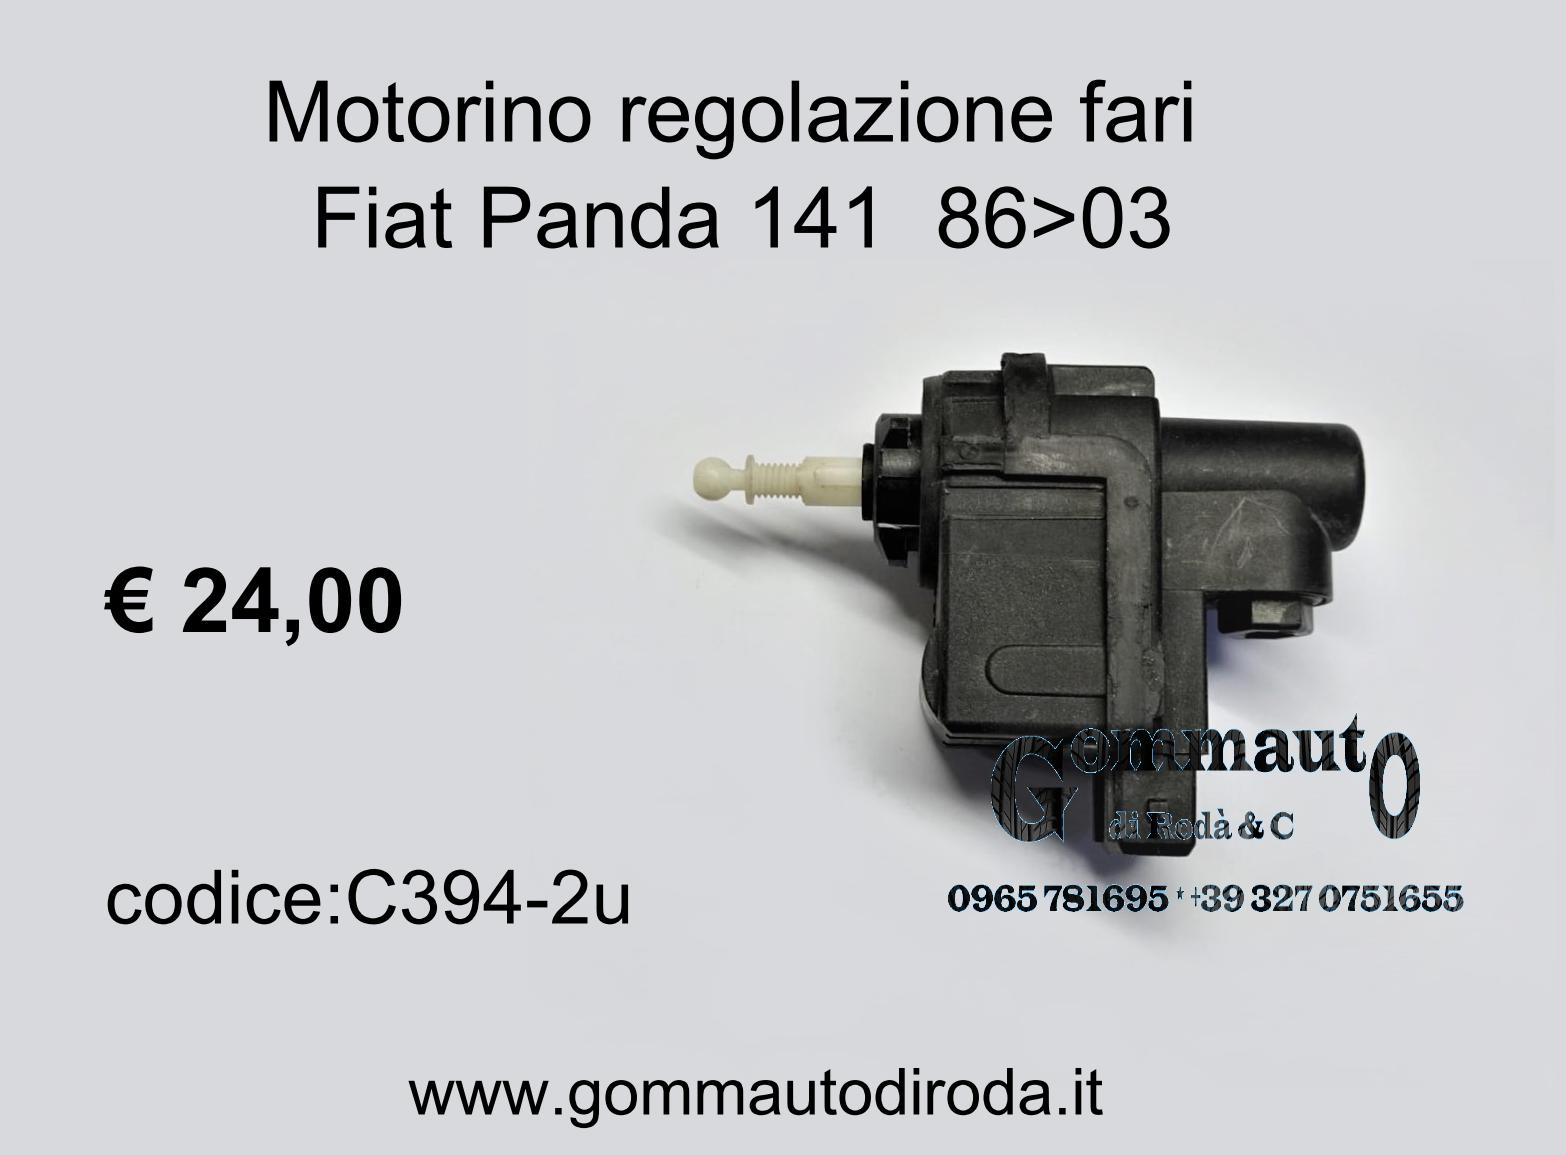 Motorino regolazione fari Fiat Panda 141